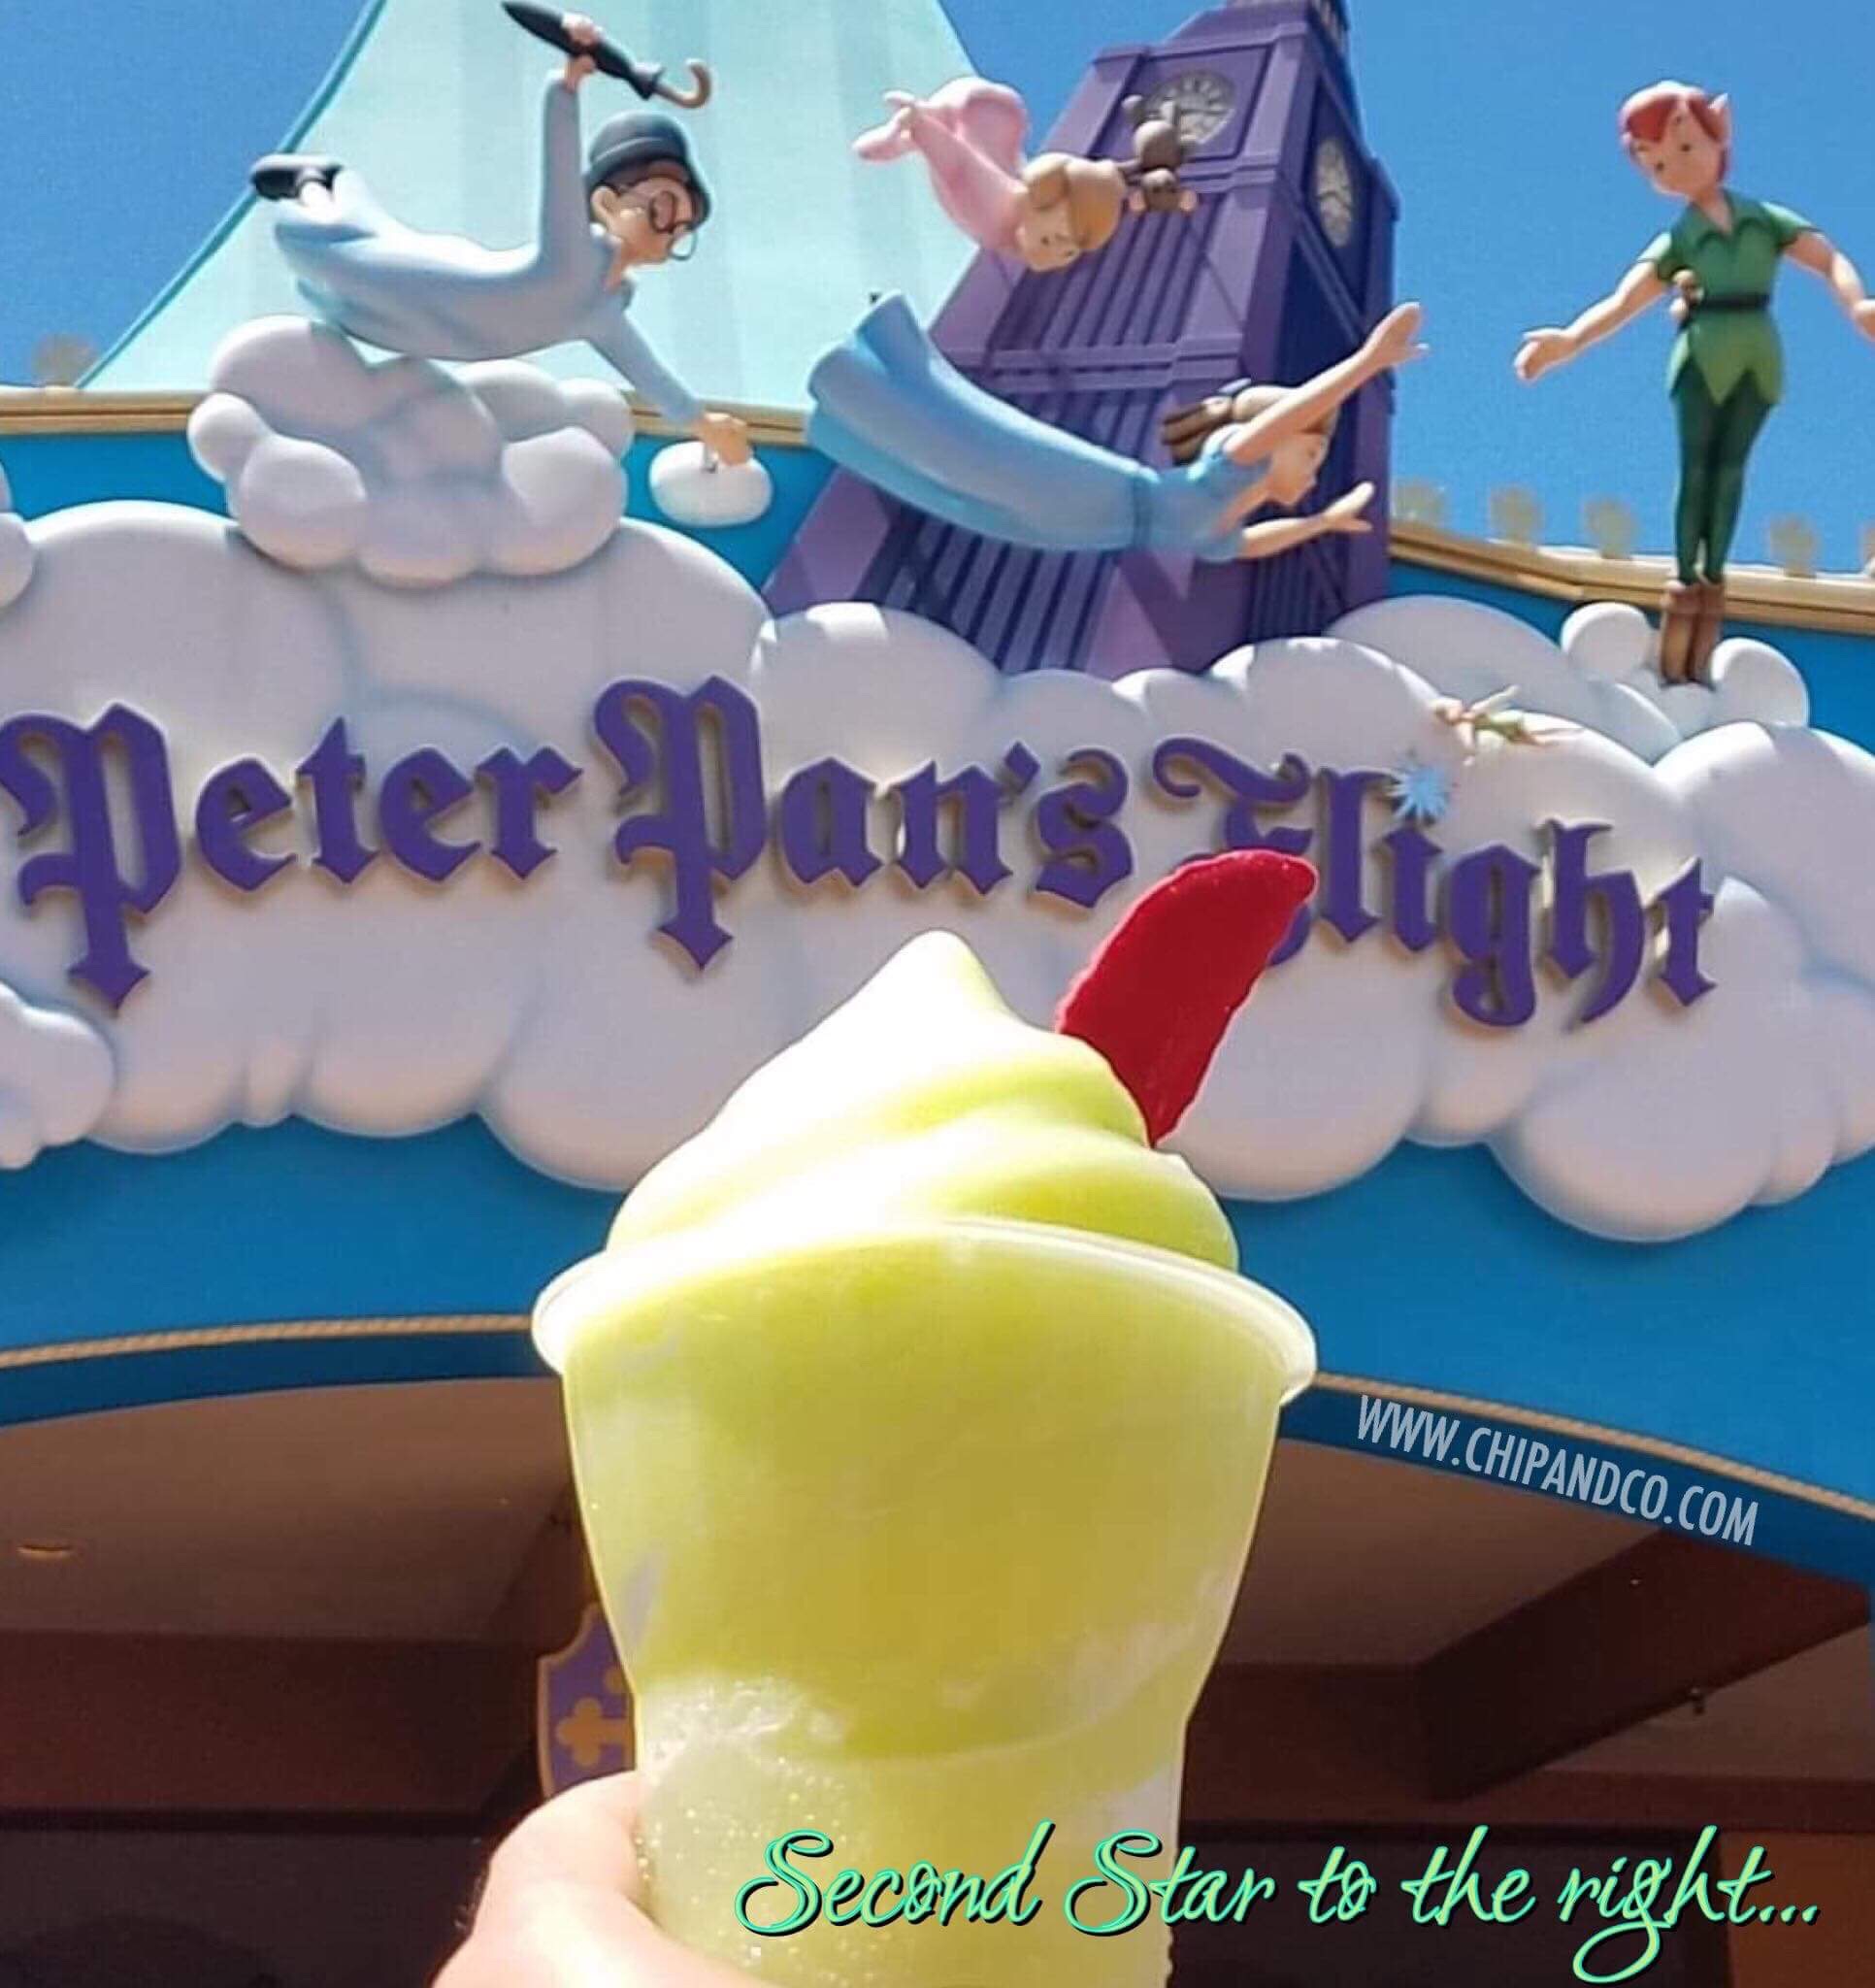 Peter Pan Float in Fantasyland